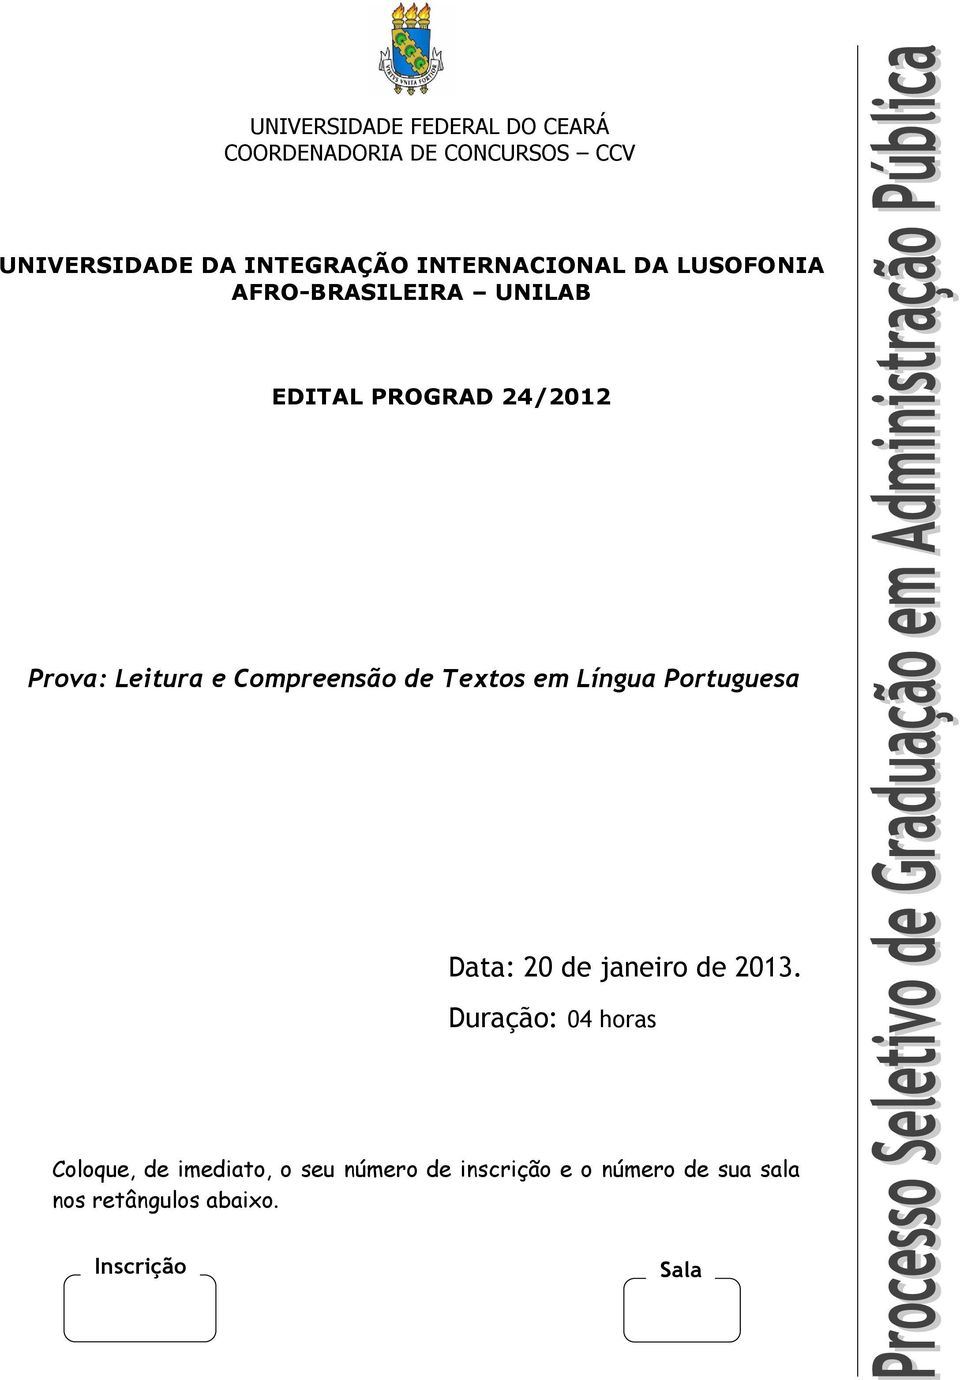 Compreensão de Textos em Língua Portuguesa Data: 20 de janeiro de 2013.